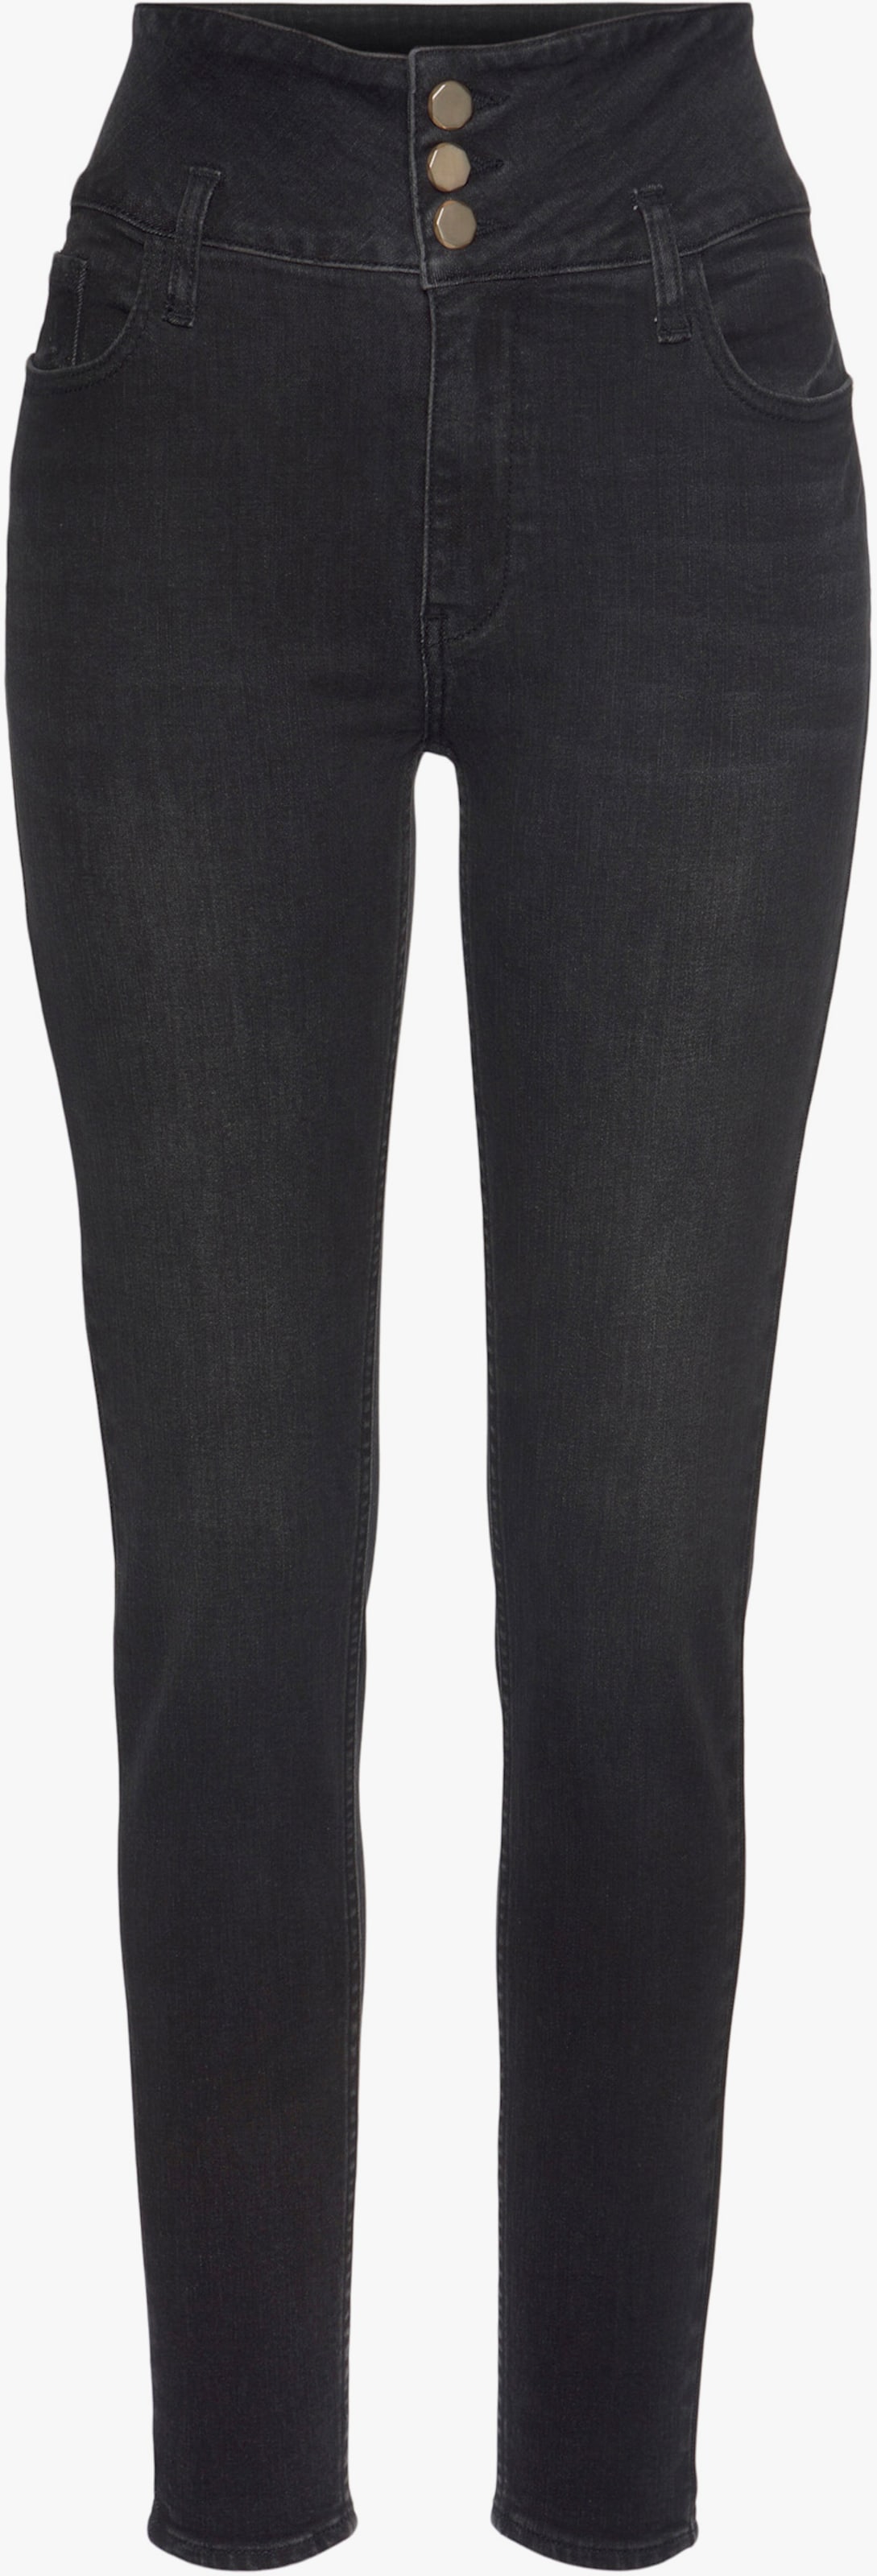 LASCANA High waist jeans - black washed